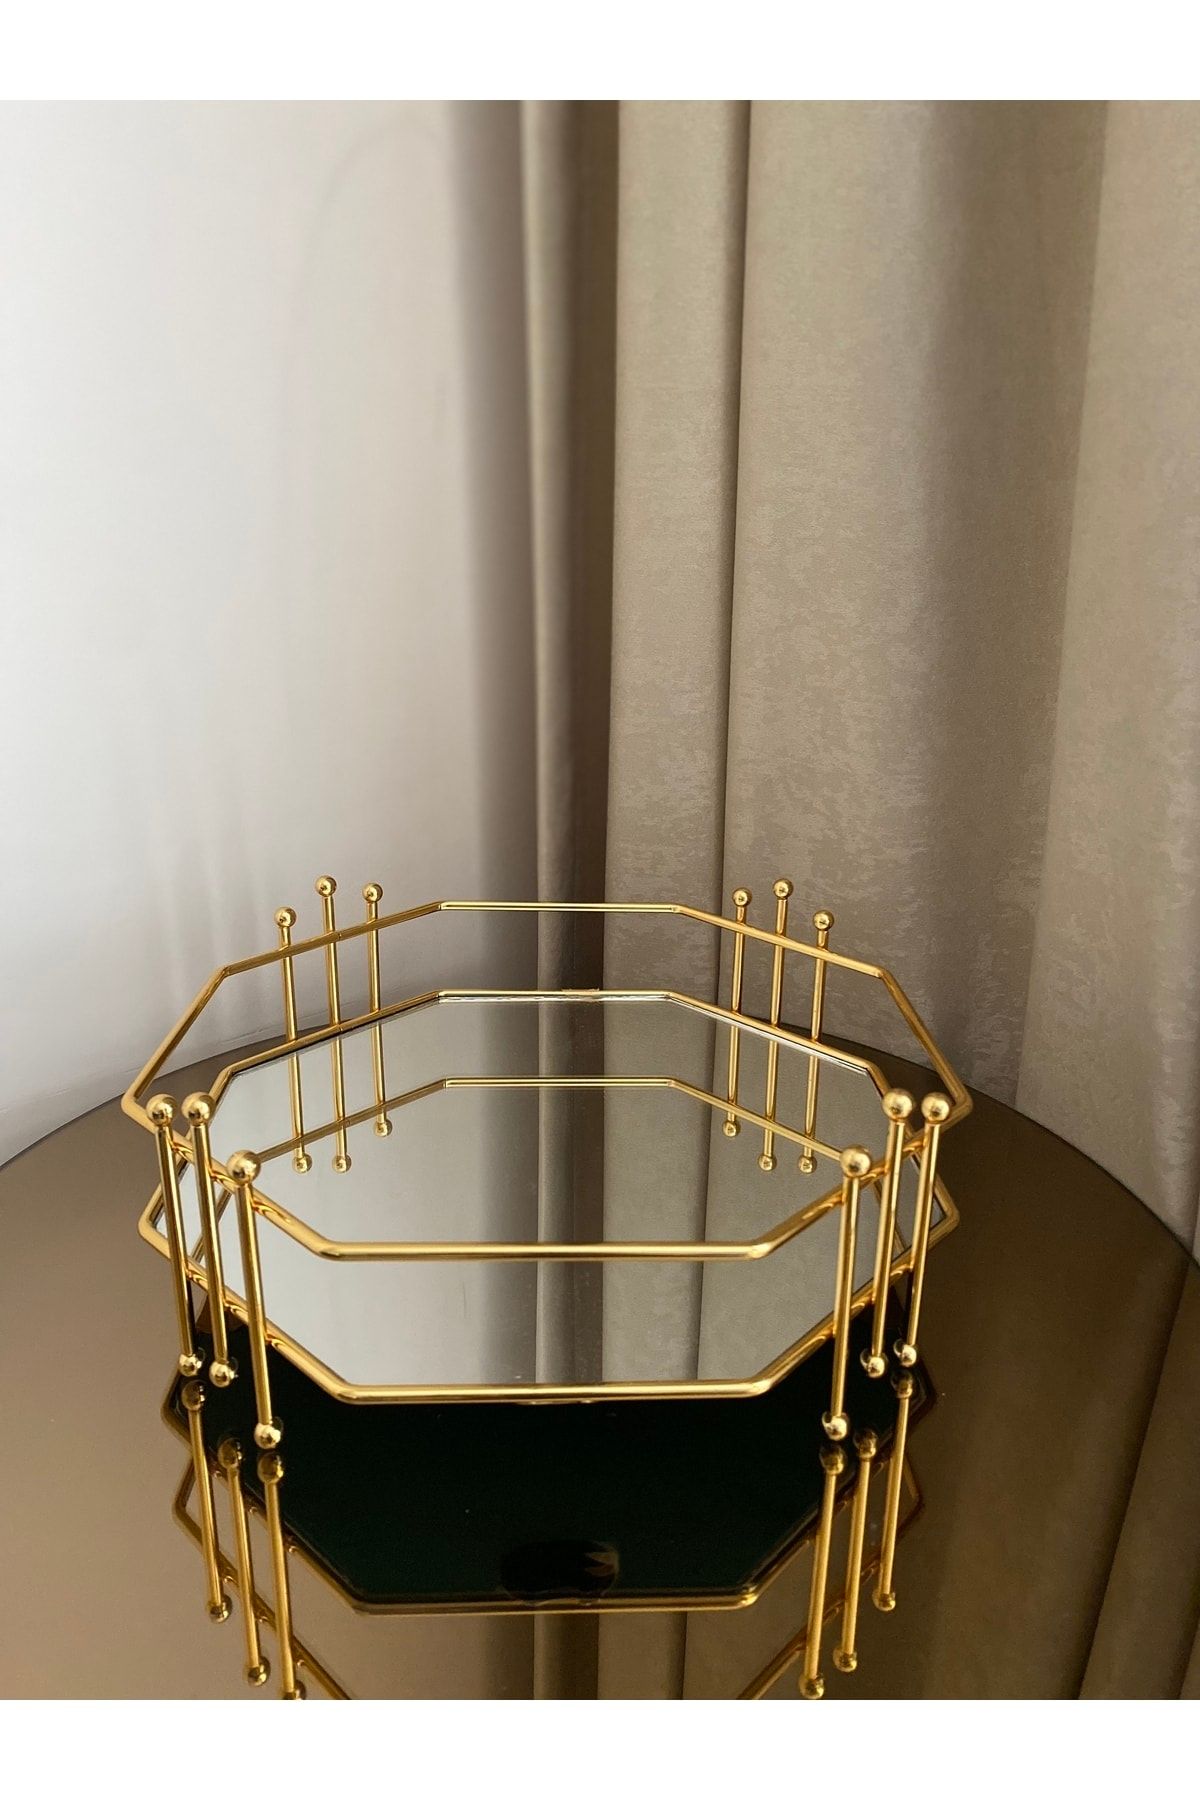 Housess Aynalı Bal Peteği Misketli Gold Dekoratif Tepsi Küçük Boy 27x27 cm